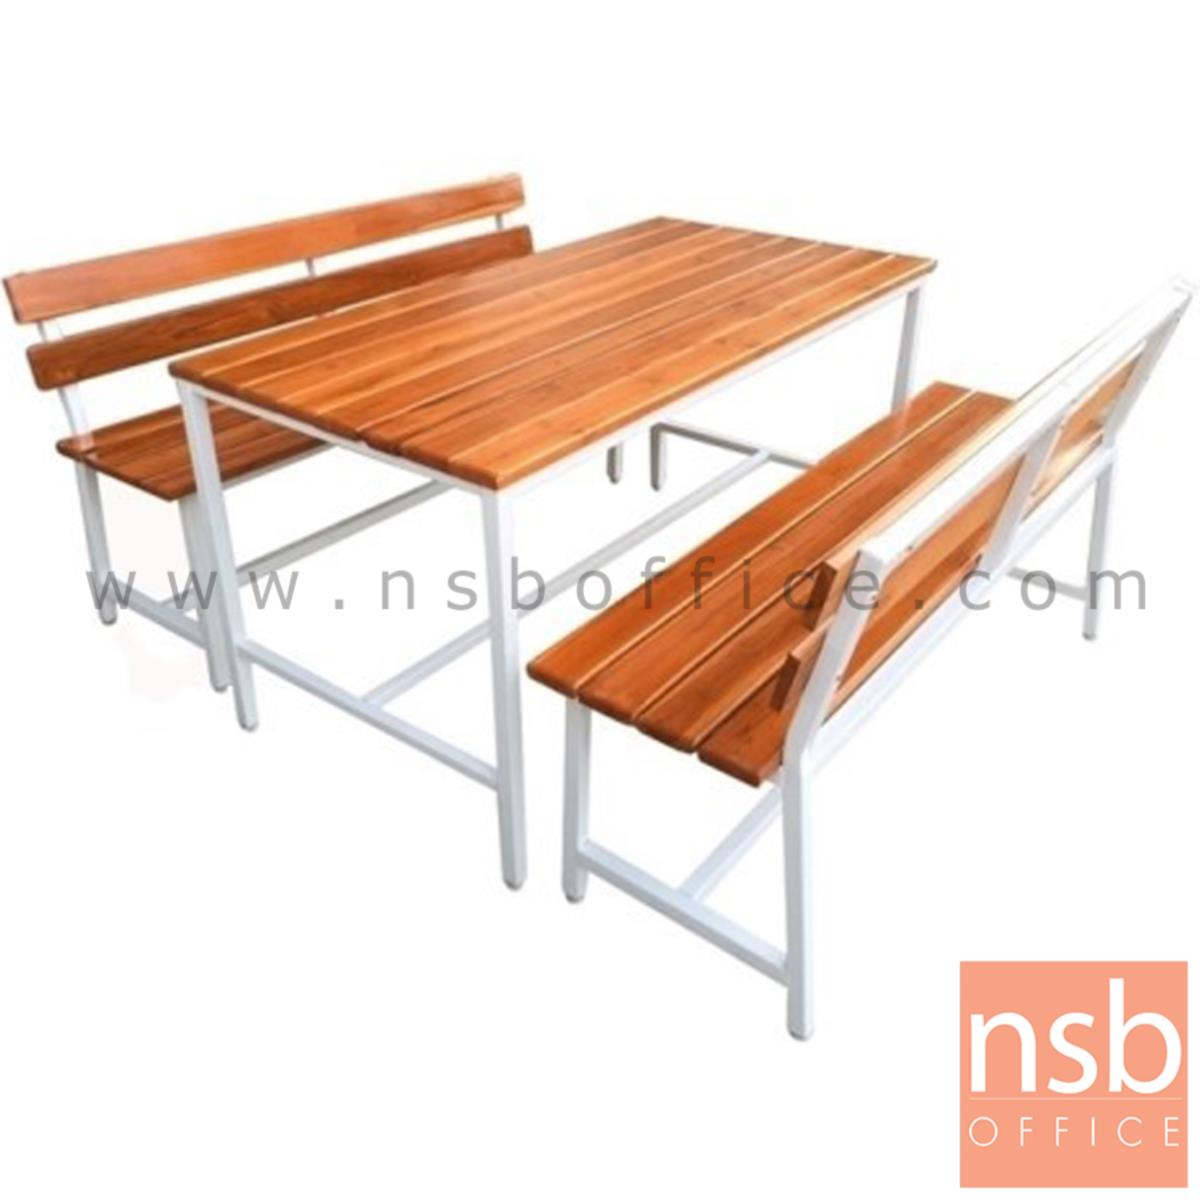 โต๊ะโรงอาหารไม้สักตีระแนงชิด รุ่น TENNESSEE (เทนเนสซี) ขนาด 150W cm. ขาเหล็ก